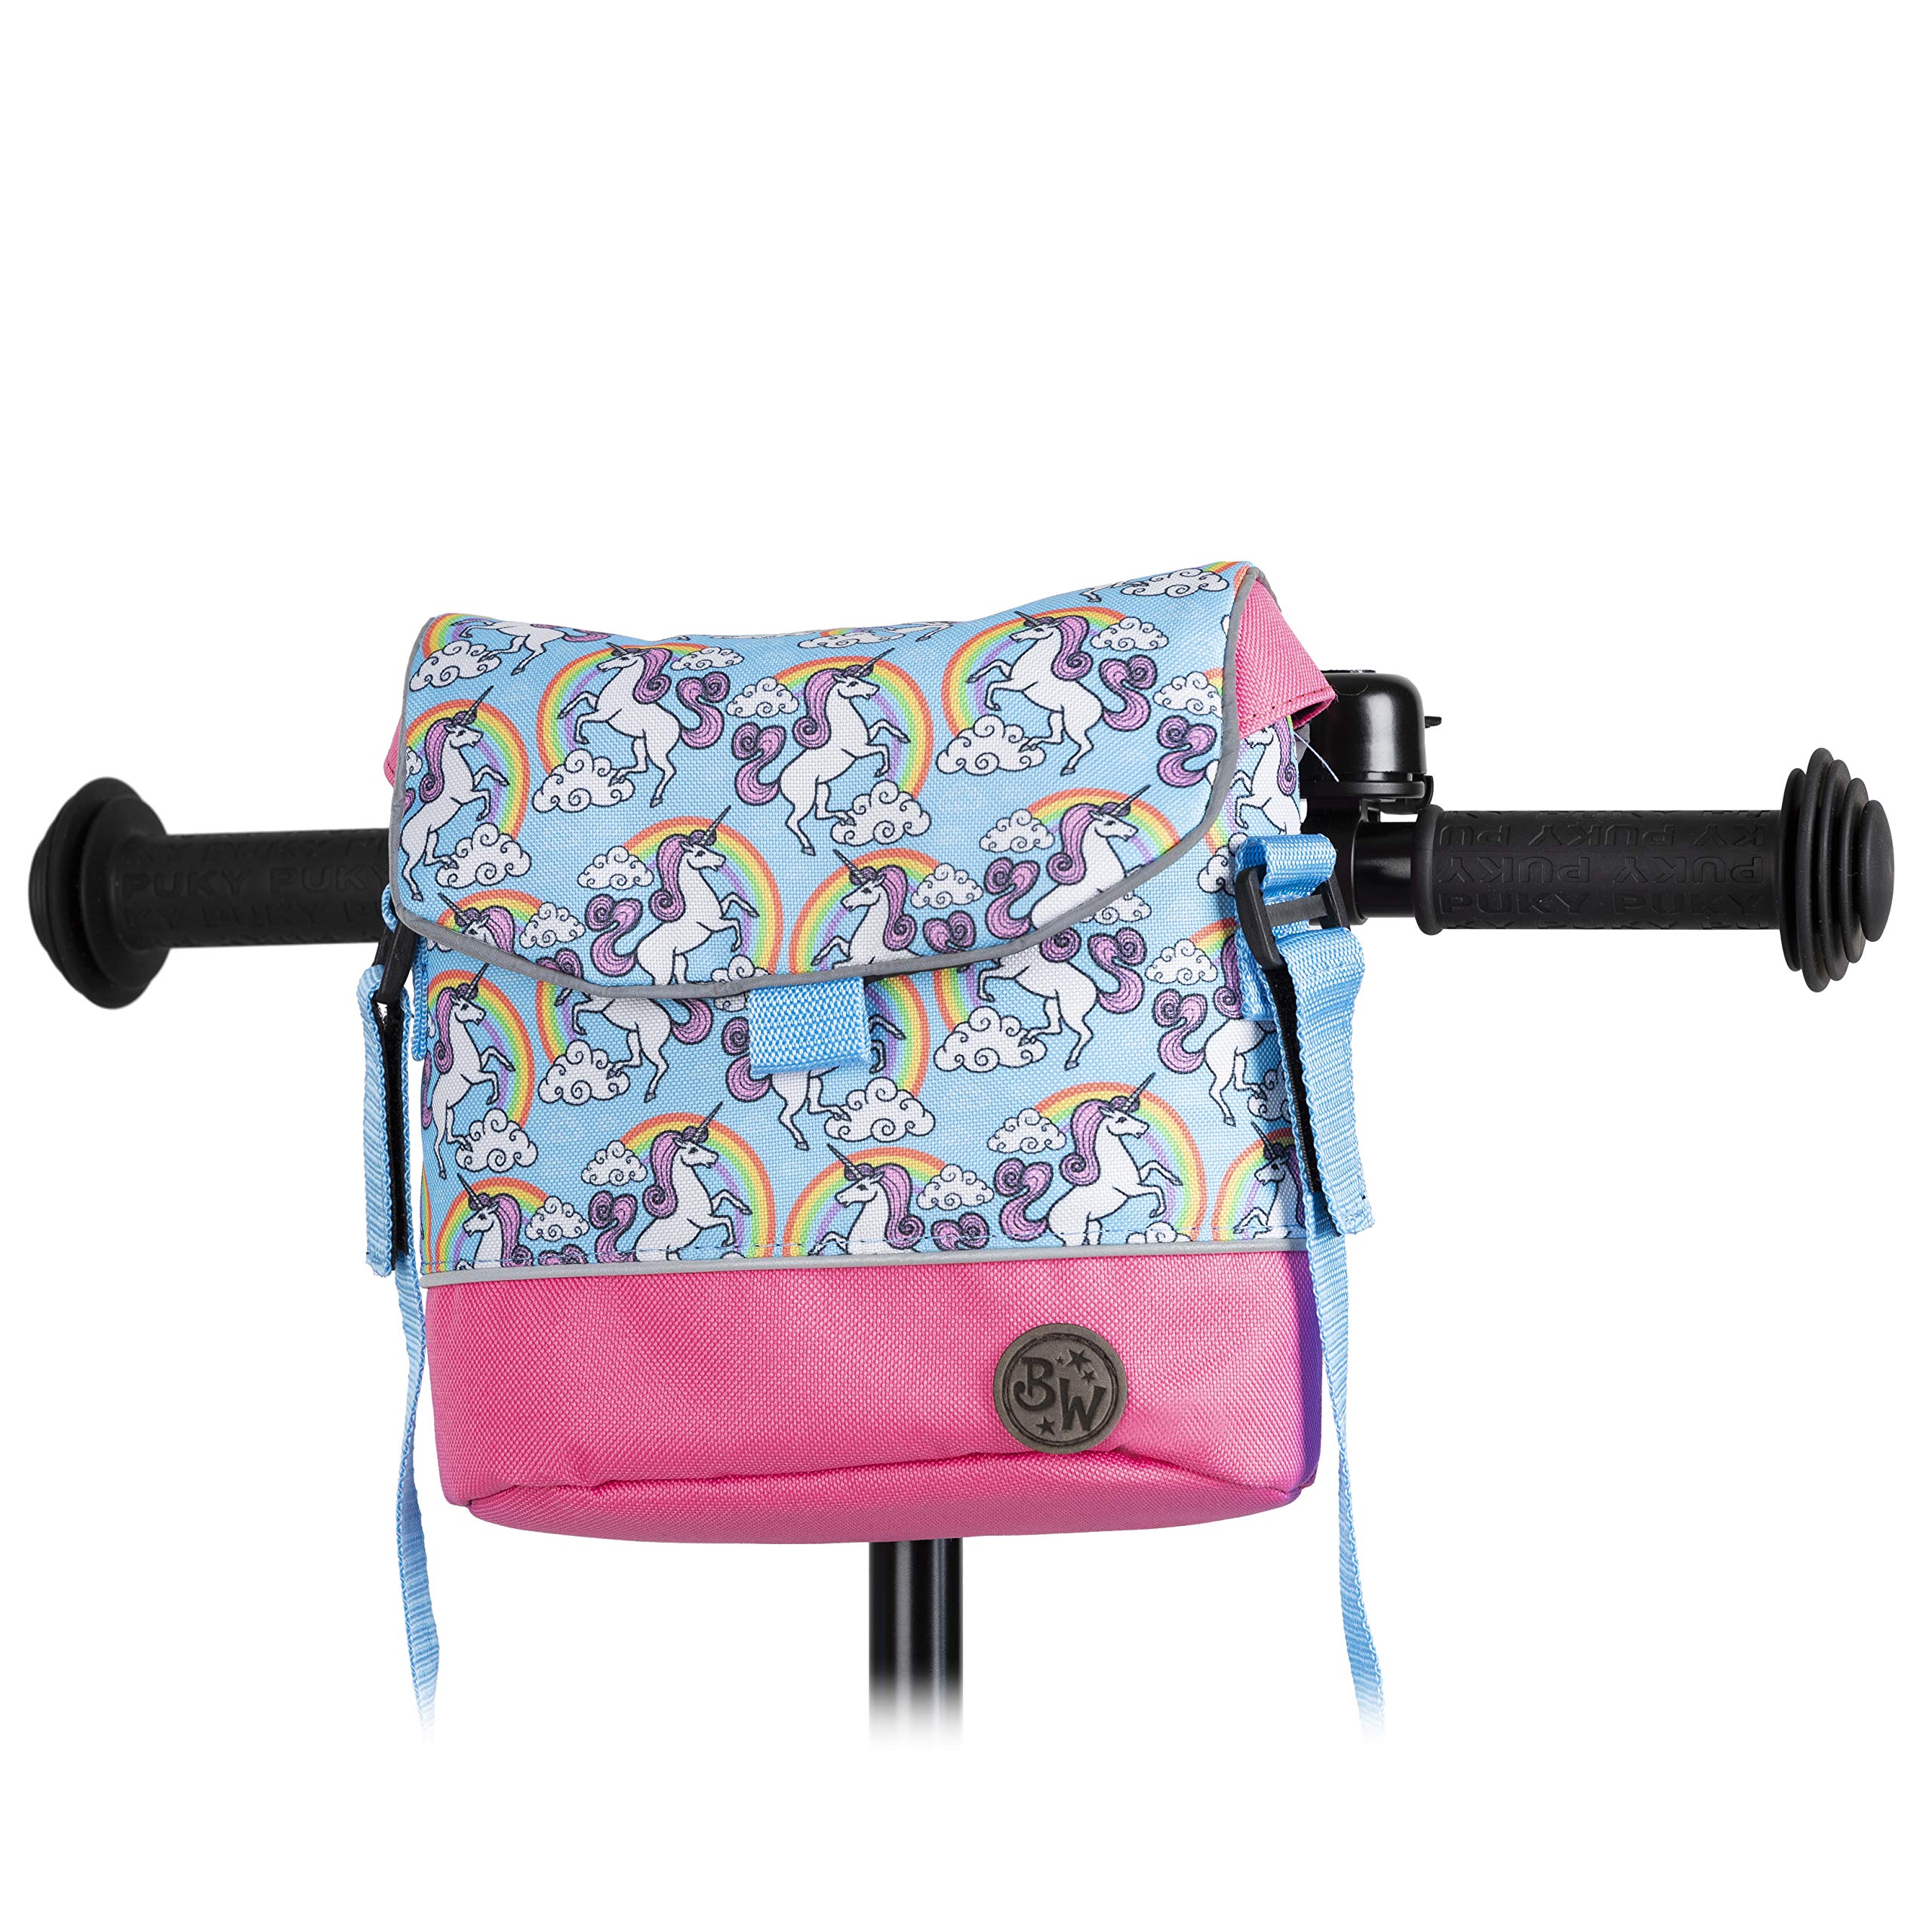 BAMBINIWELT Lenkertasche Tasche kompatibel mit Puky mit Woom Laufrad Räder Roller Fahrrad Fahrradtasche für Kinder wasserabweisend mit Schultergurt (Modell 4)